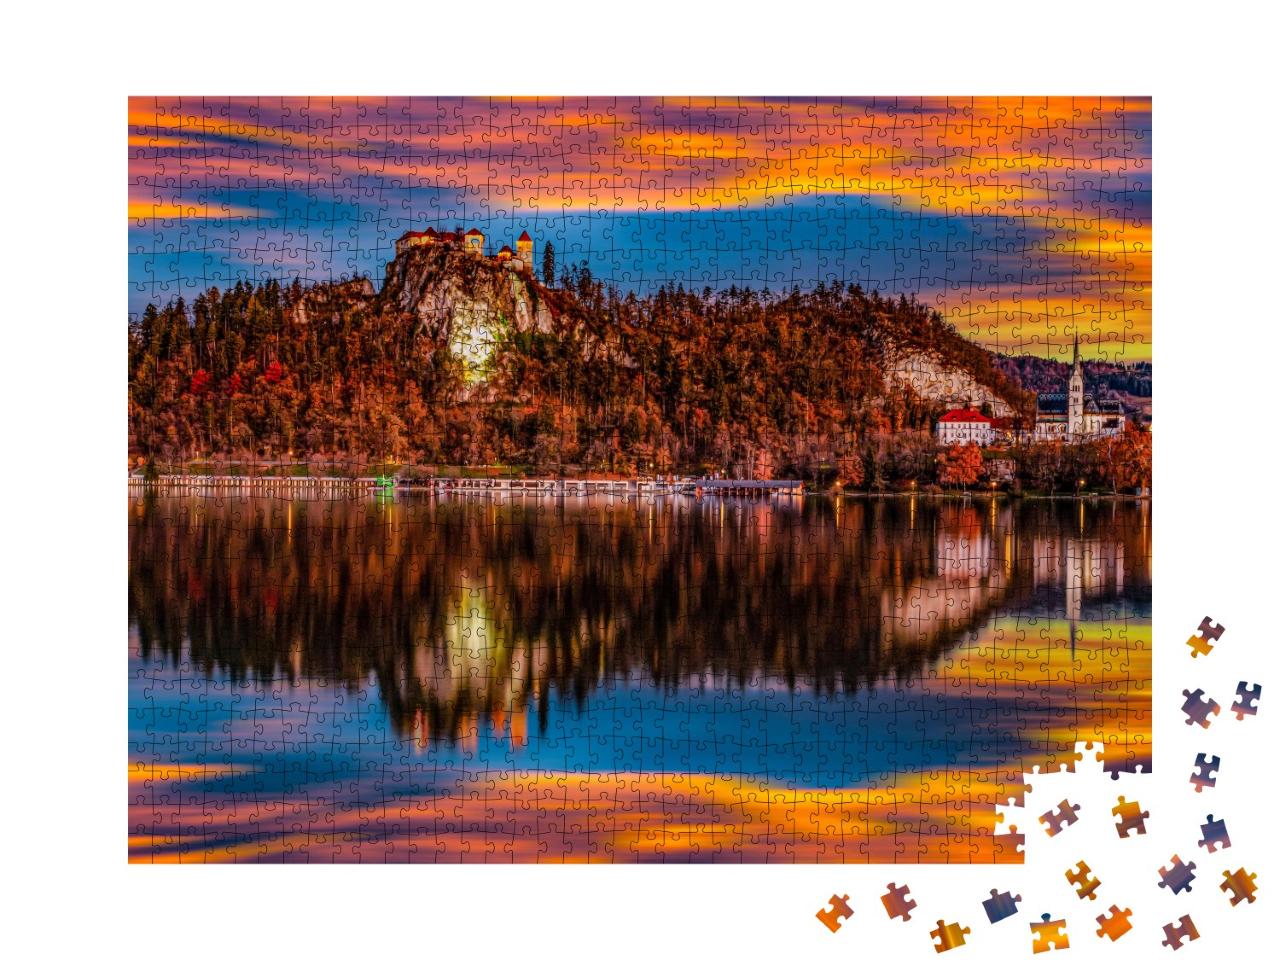 Puzzle de 1000 pièces « Un lac slovène en automne »